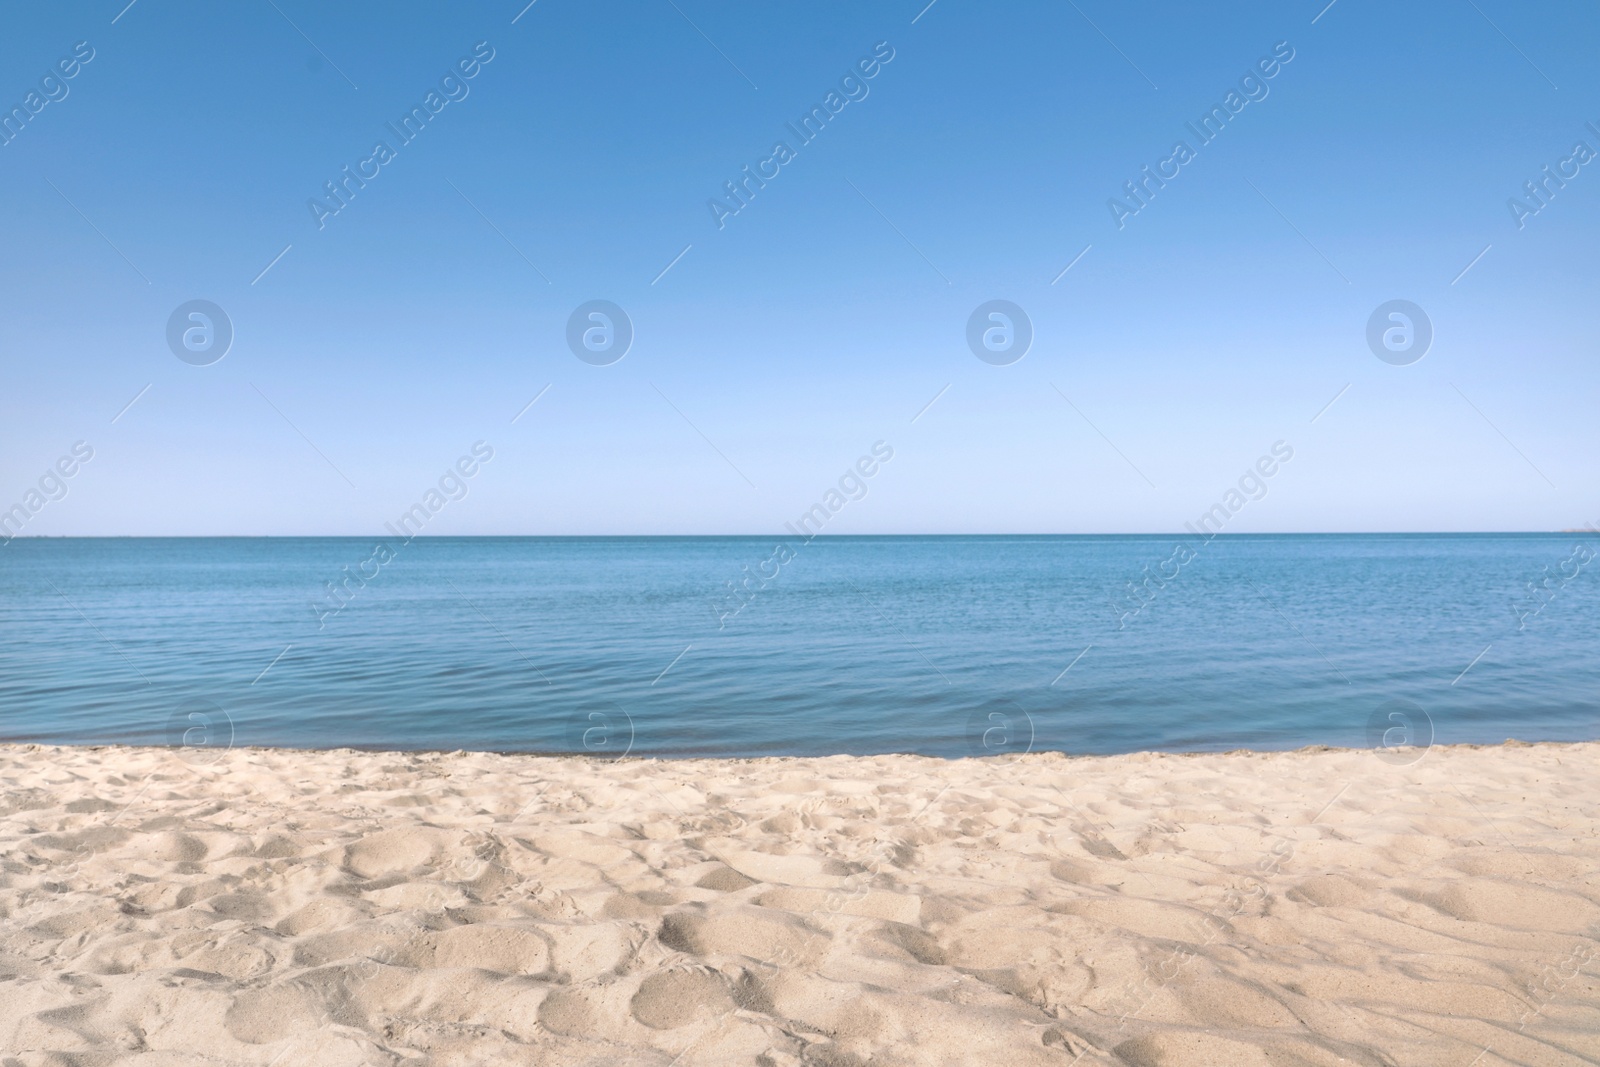 Photo of Sandy beach near sea on sunny summer day